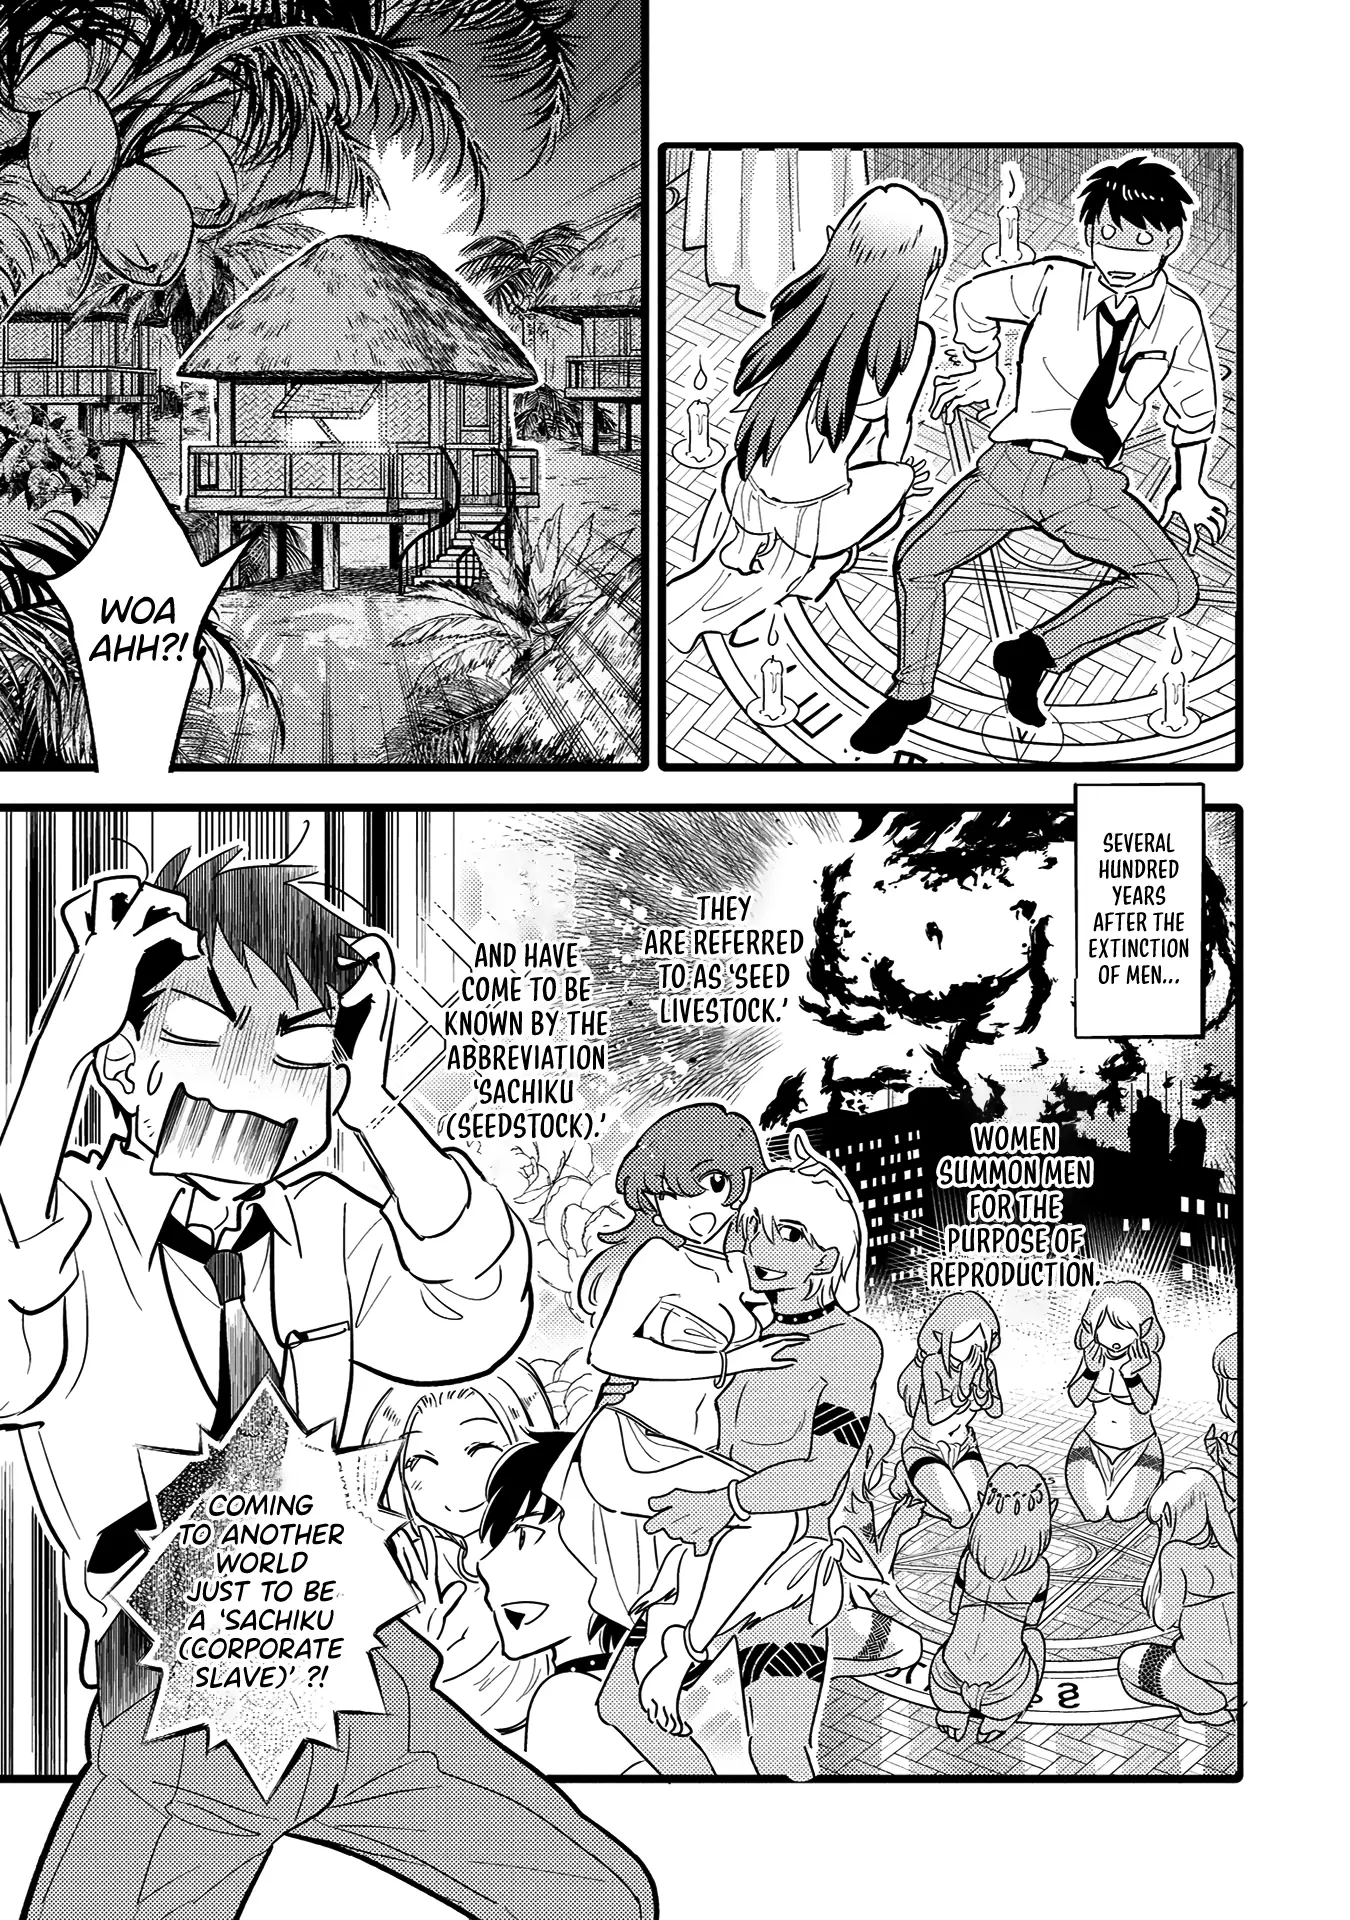 Erosugi Cheat De Isekai Harem♪ Comic Anthology - 1 page 5-67f0fde2